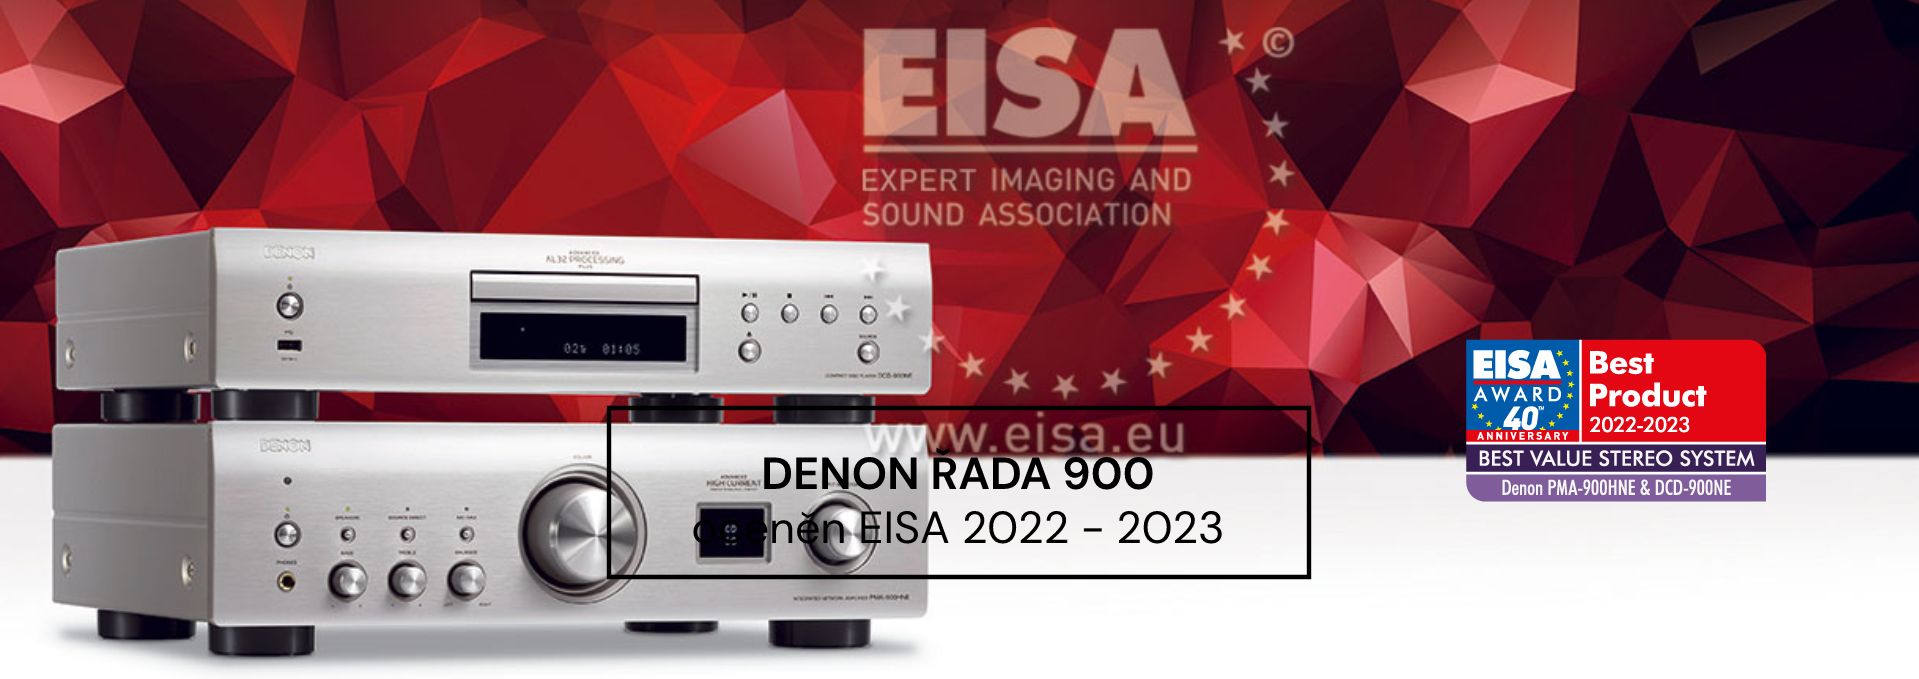 Denon PMA / DCD-900NE EISA